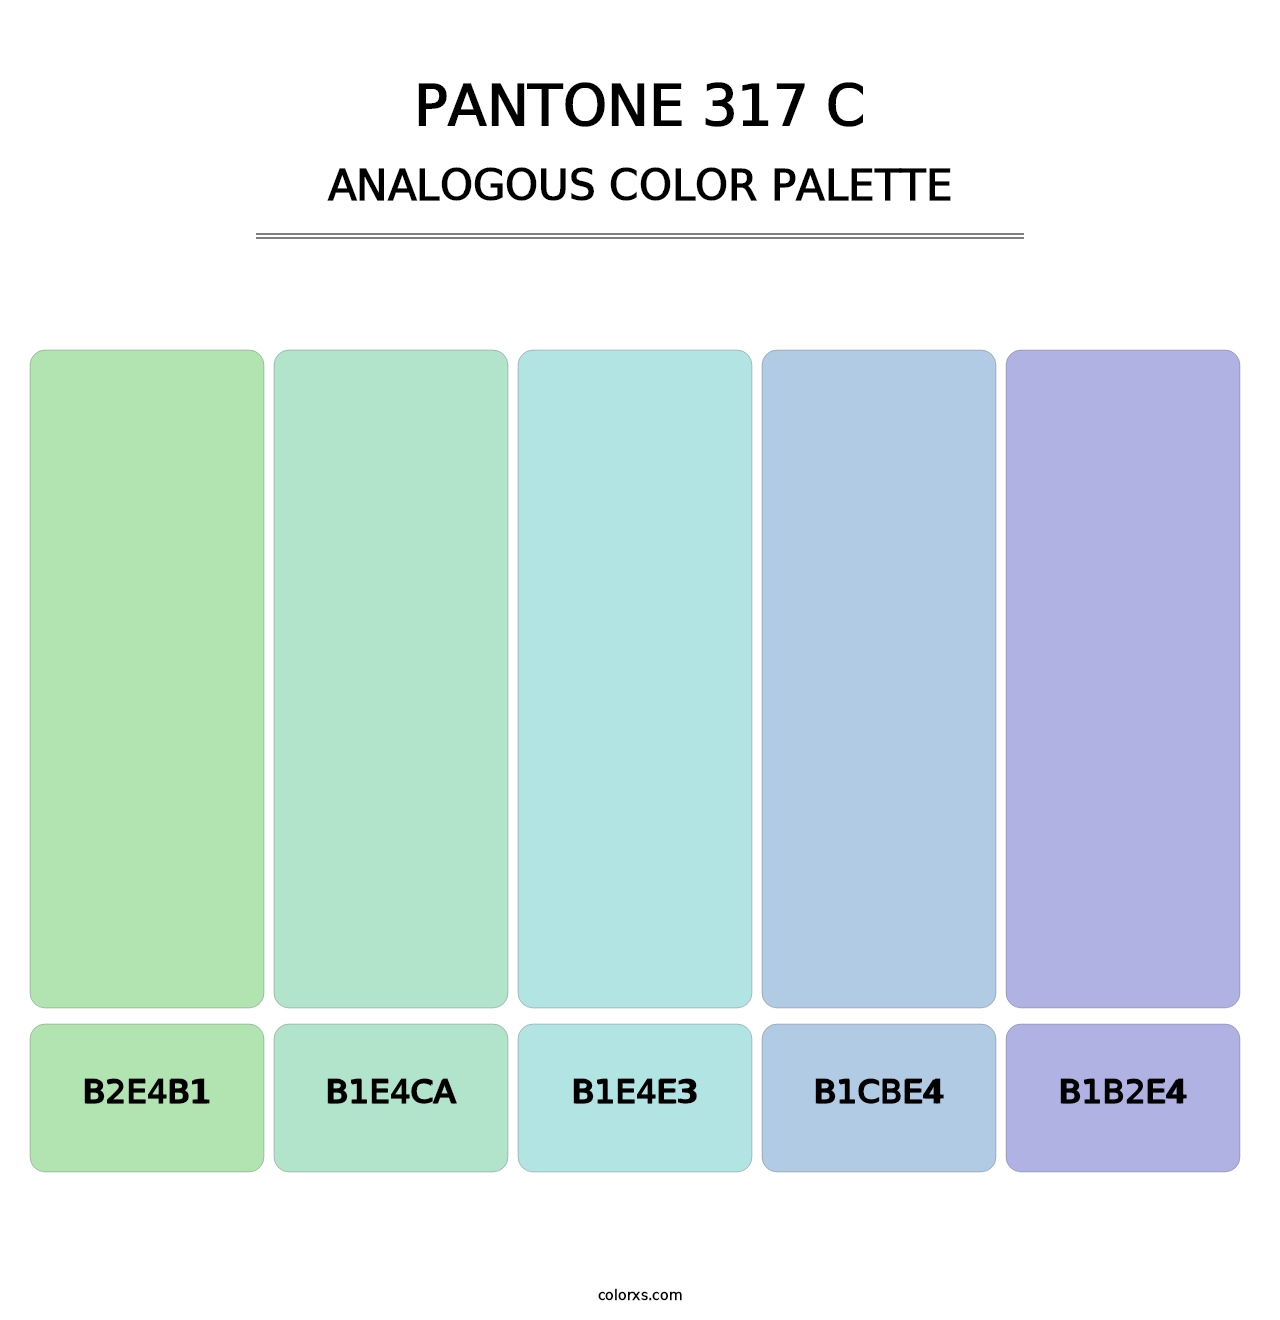 PANTONE 317 C - Analogous Color Palette